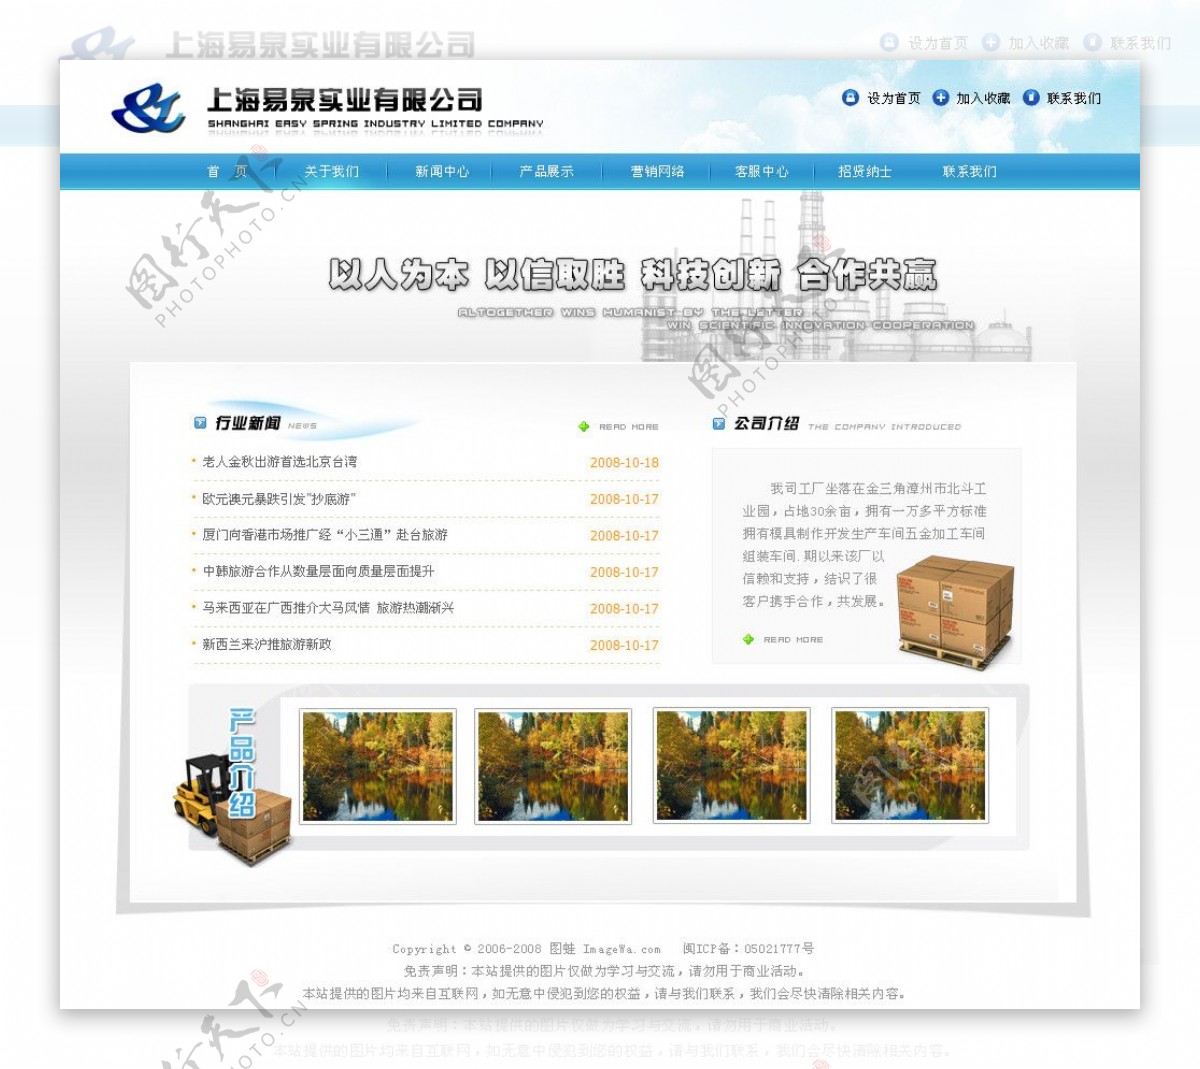 中文商务网站设计稿图片